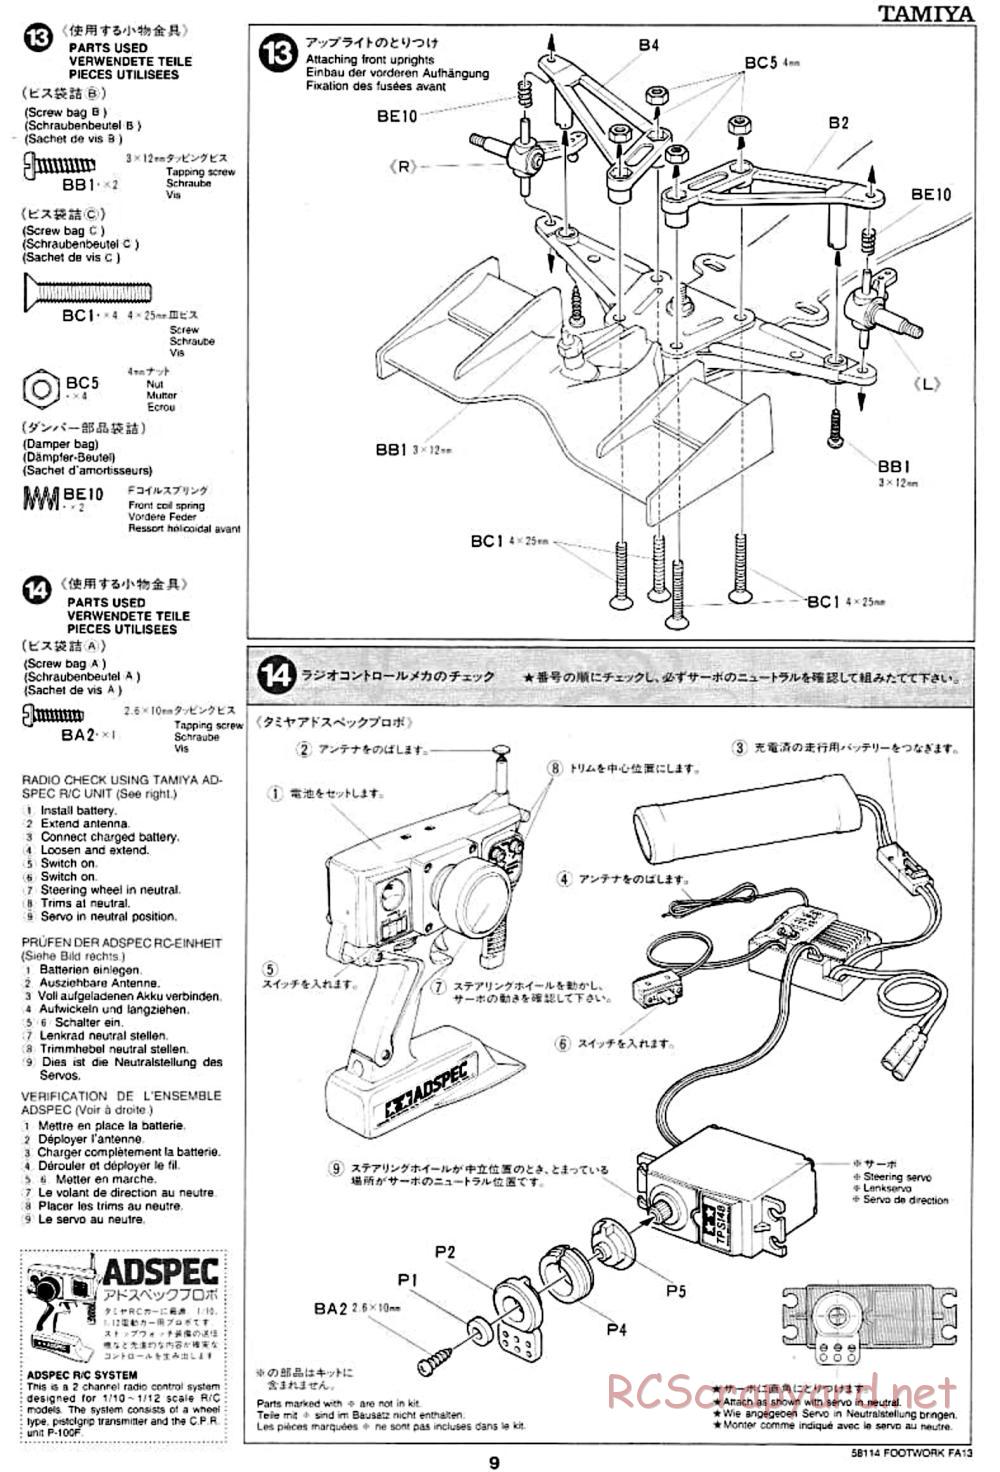 Tamiya - Footwork FA13 Mugen Honda - F102 Chassis - Manual - Page 9